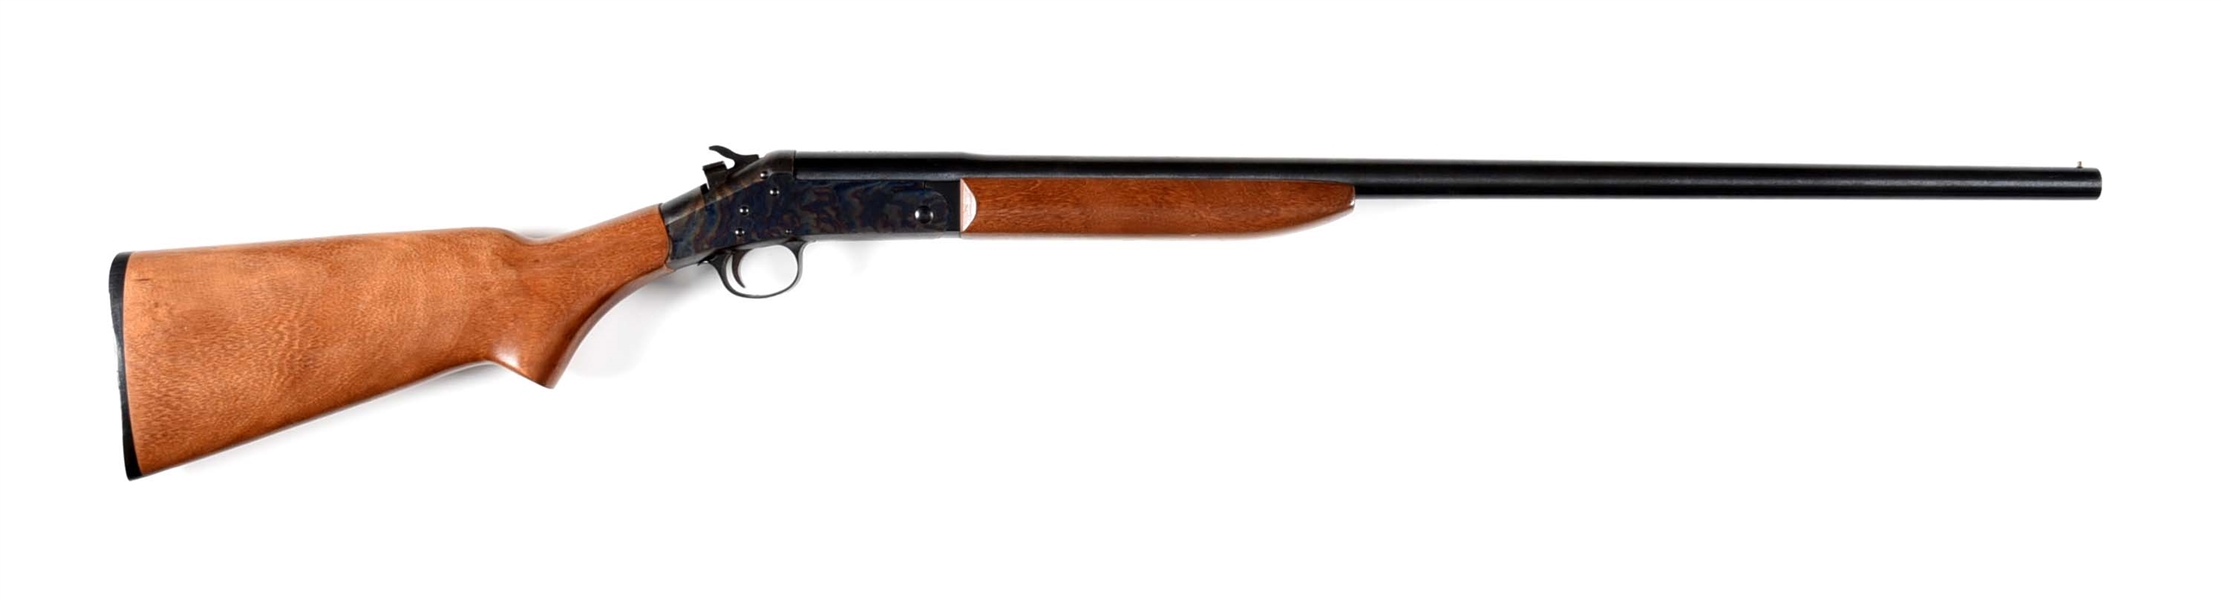 (M) HARRINGTON & RICHARDSON 20 BORE TOPPER MODEL 58 SINGLE SHOT SHOTGUN.